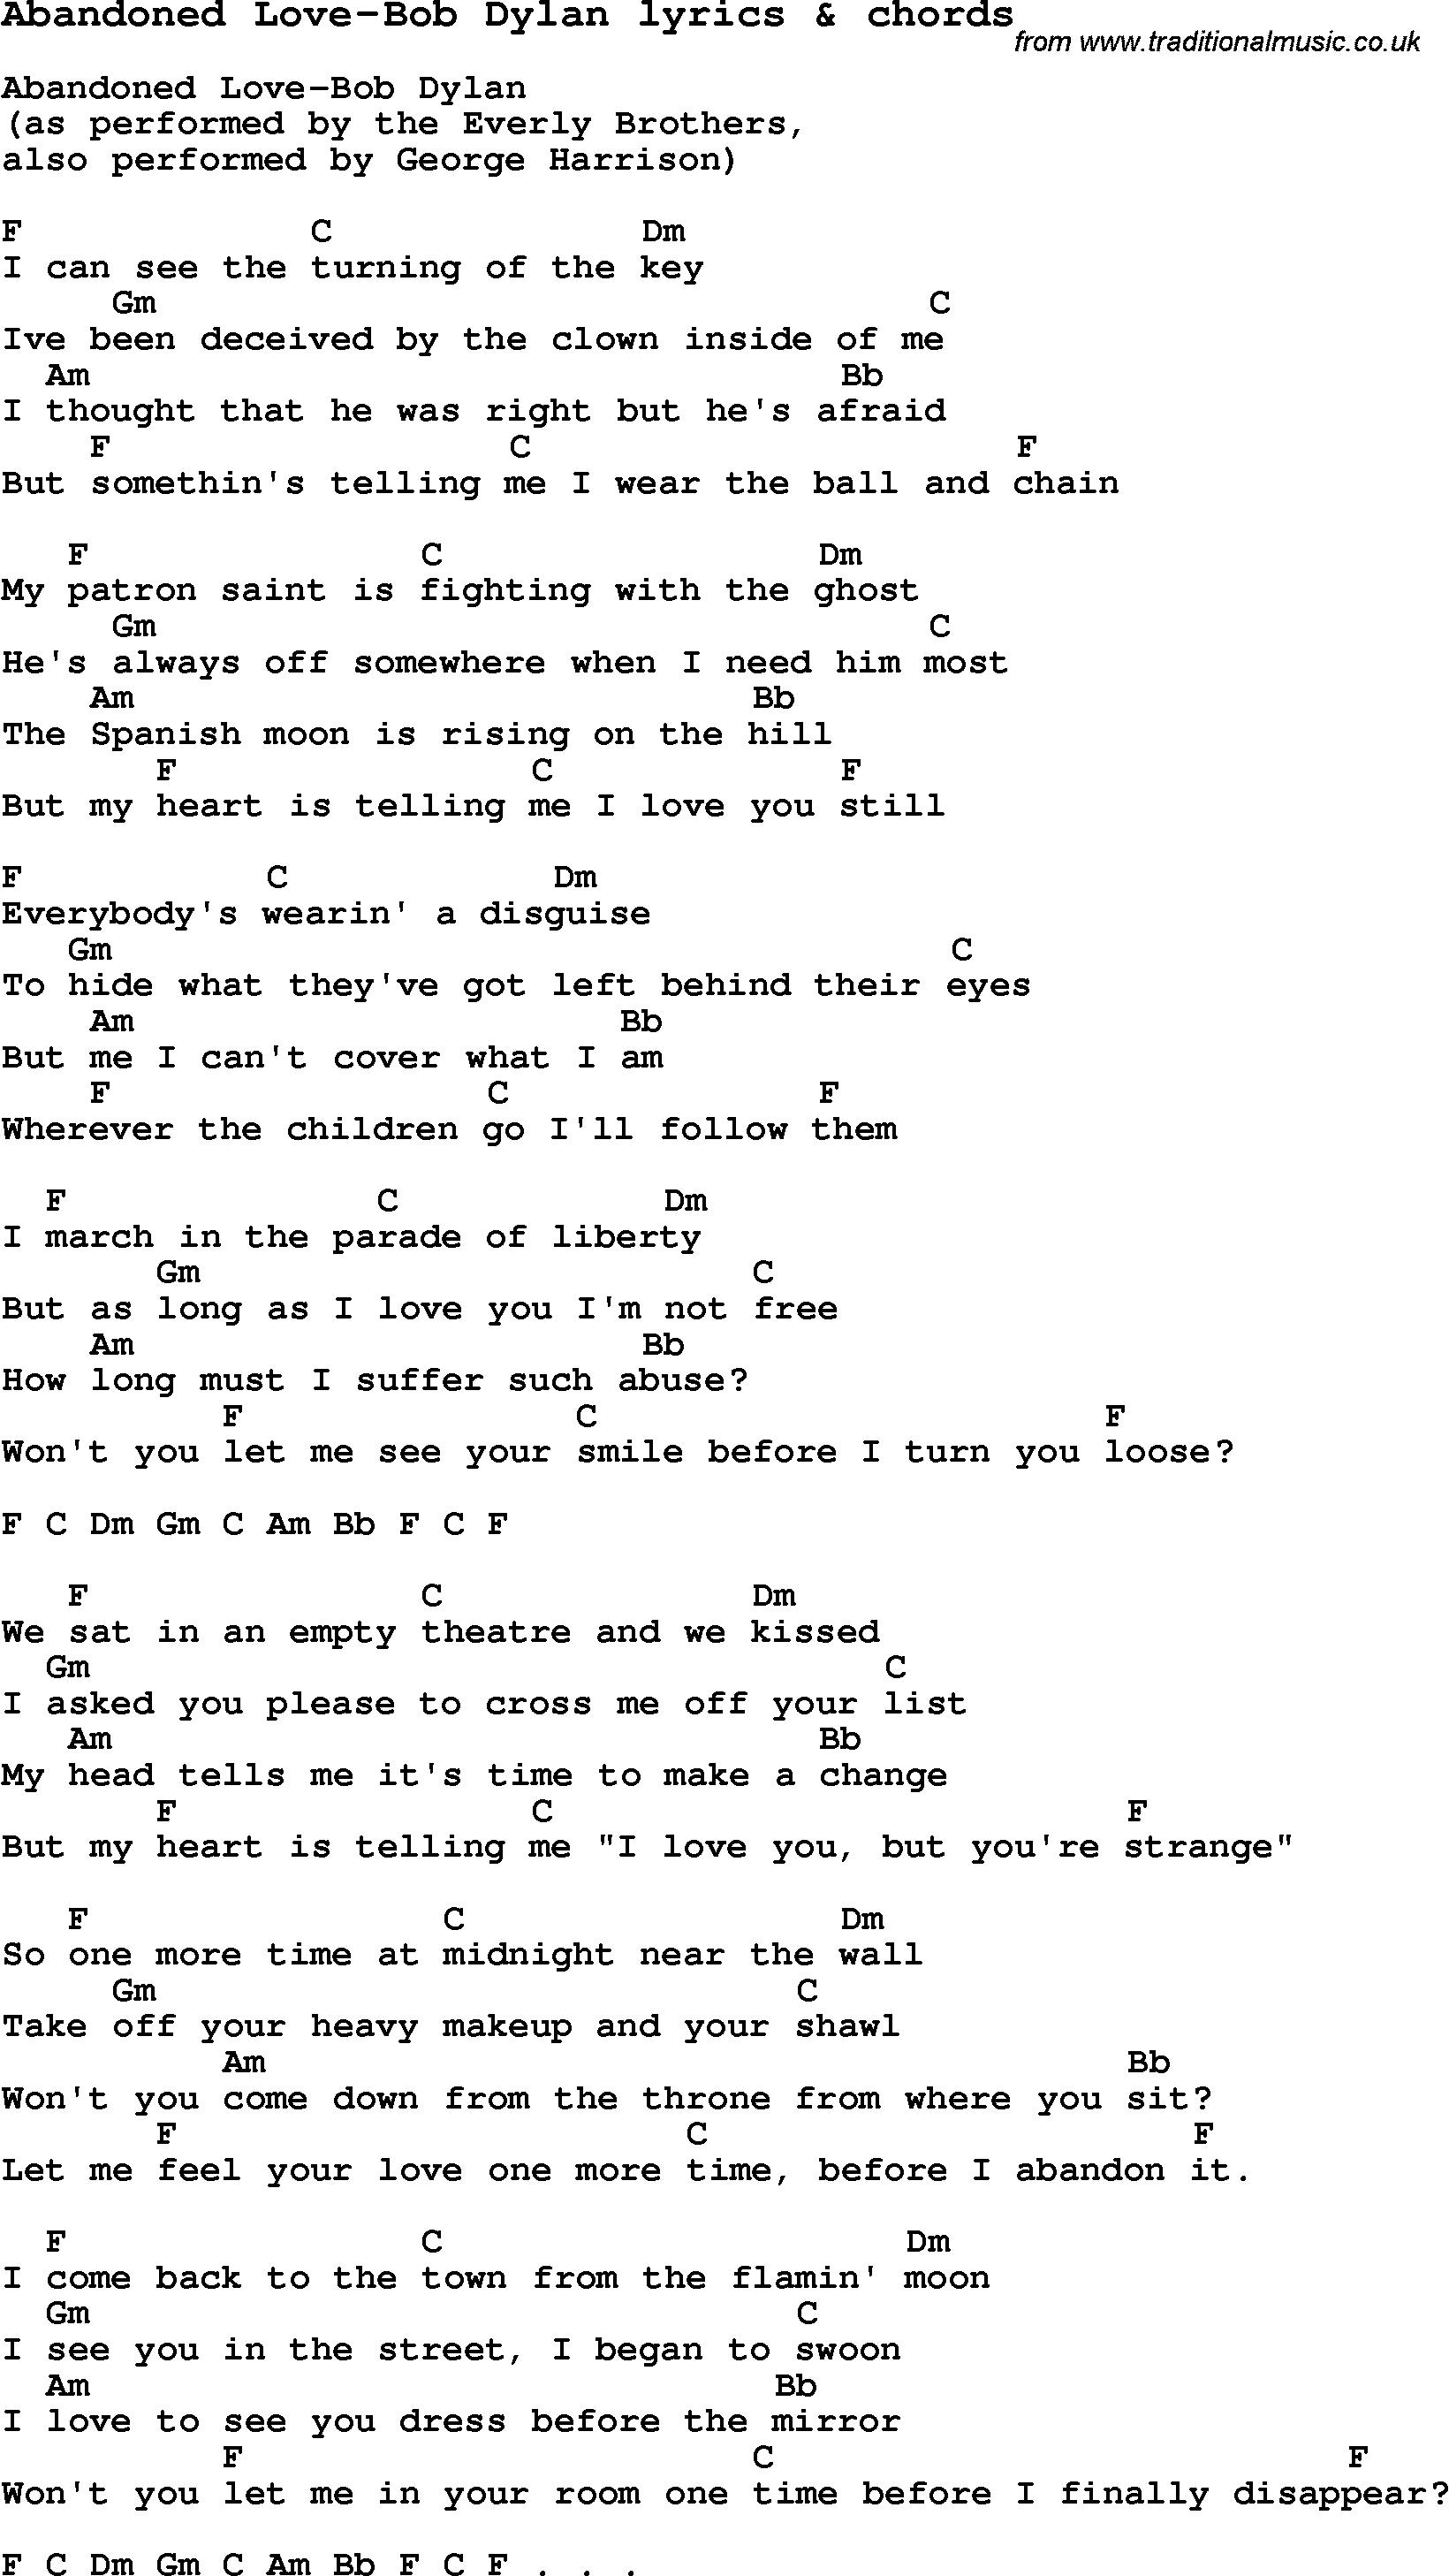 Love Song Lyrics for: Abandoned Love-Bob Dylan with chords for Ukulele, Guitar Banjo etc.